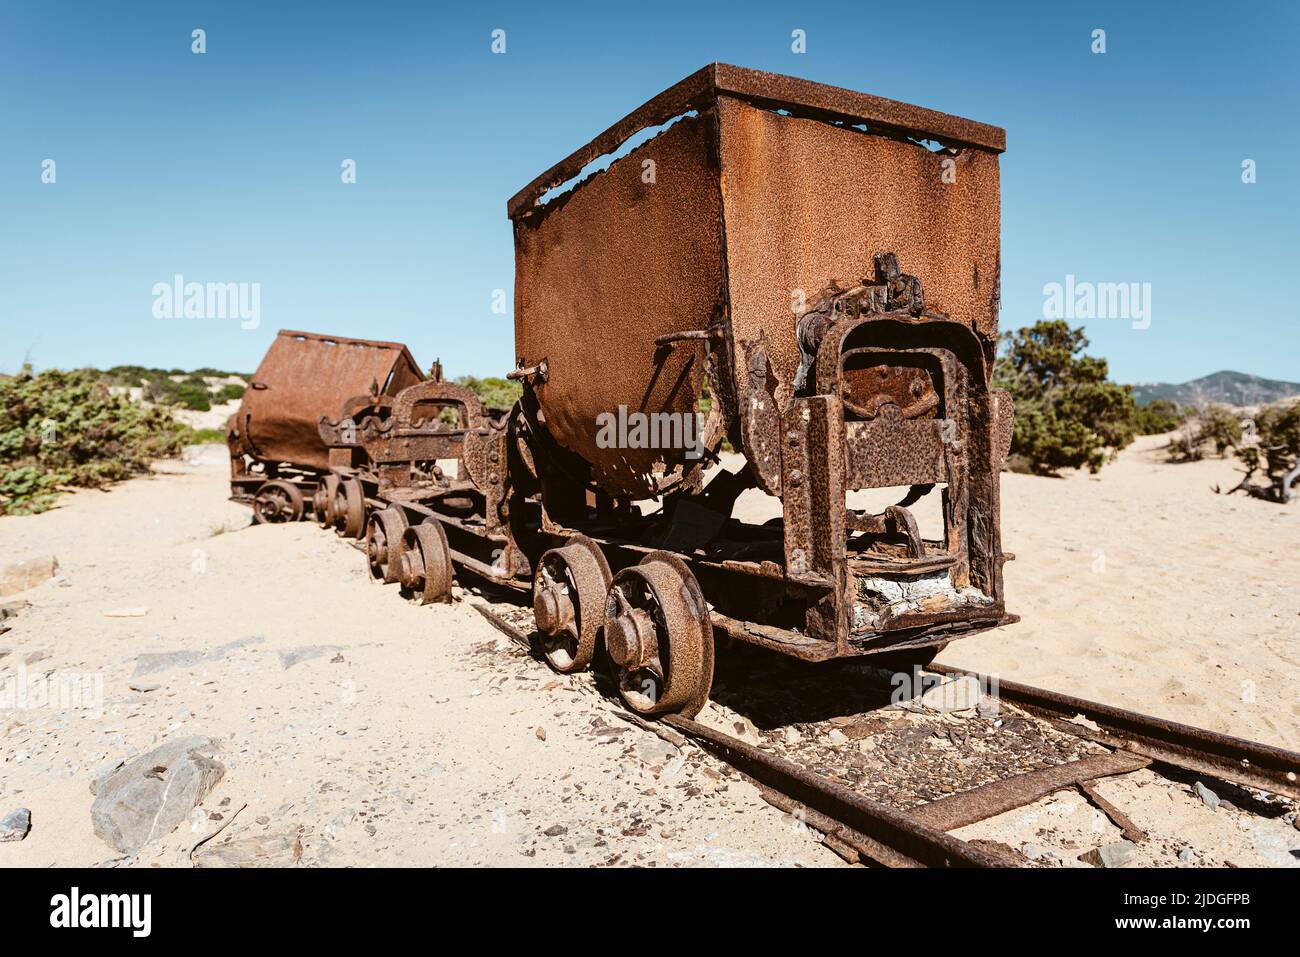 Wagons cassés rouillés et débris de chemin de fer des mines de plomb et de zinc aux dunes de sable près de la plage de Piscinas, Costa Verde, Sardaigne, Italie Banque D'Images